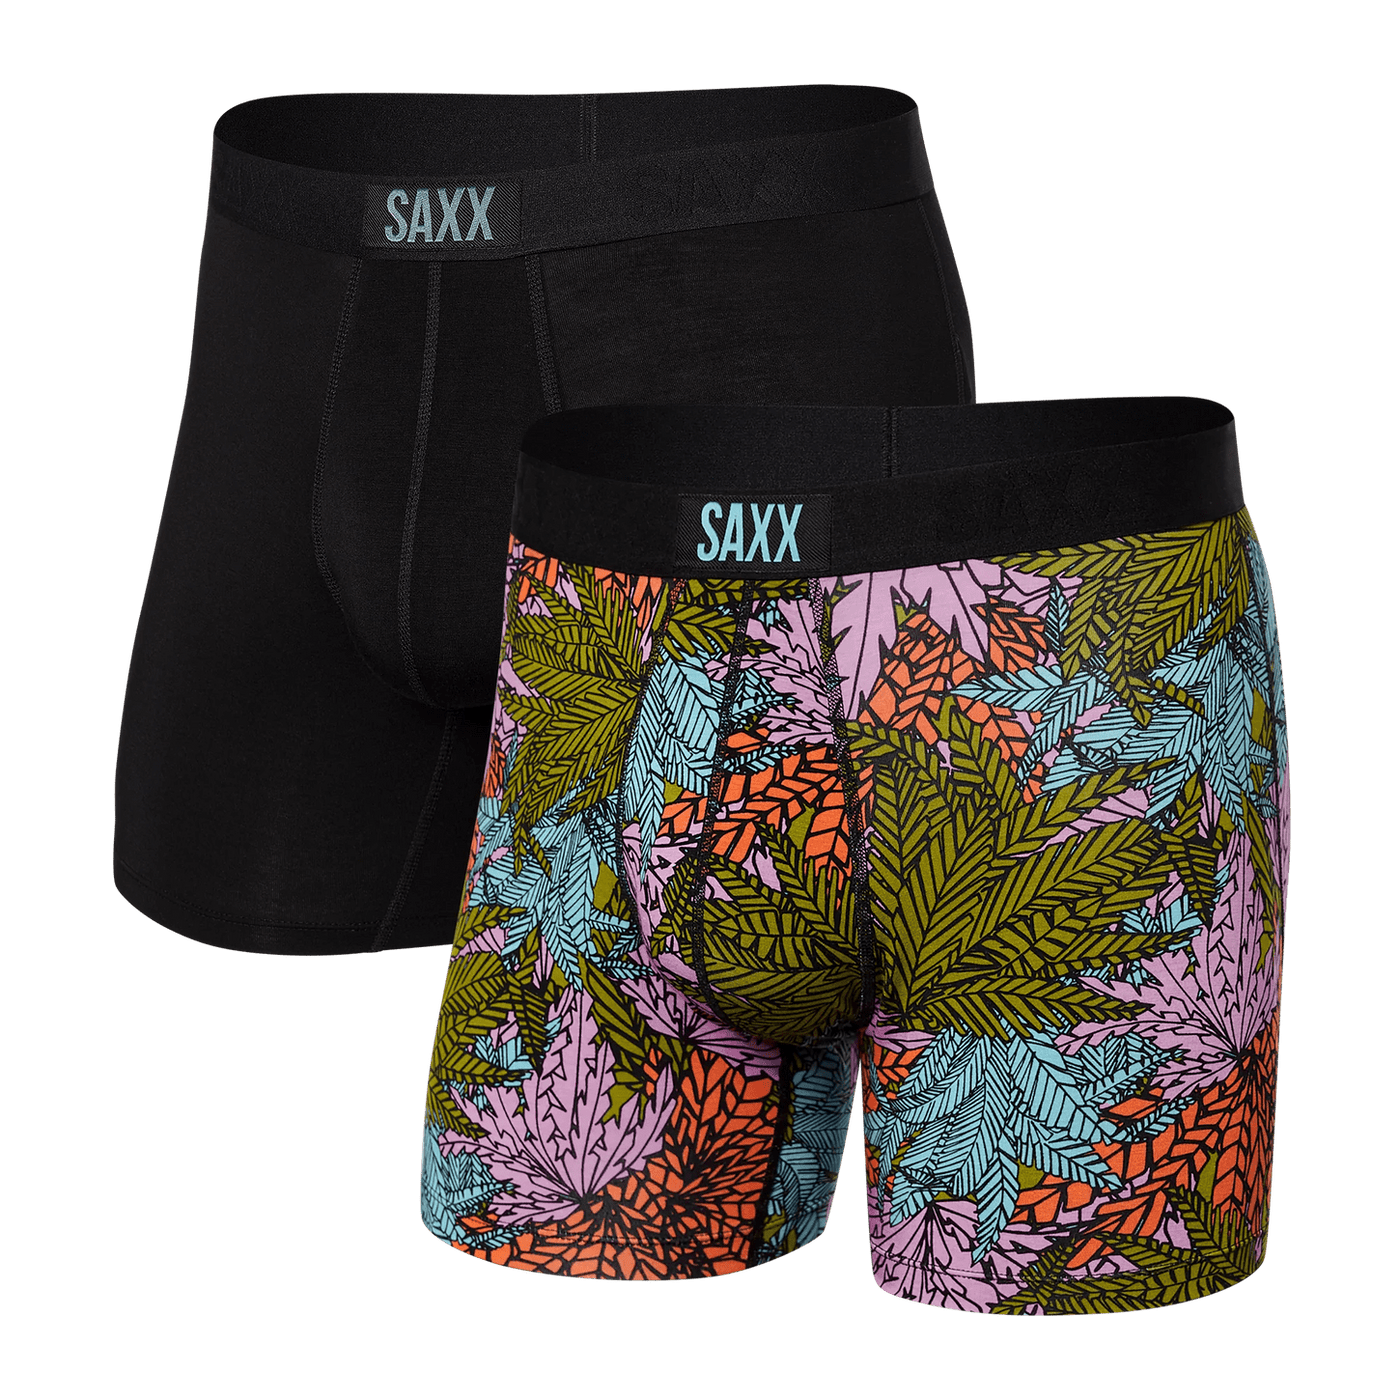 Saxx Vibe Boxers - Sub Tropic / Black (2 Pack) - TheHockeyShop.com